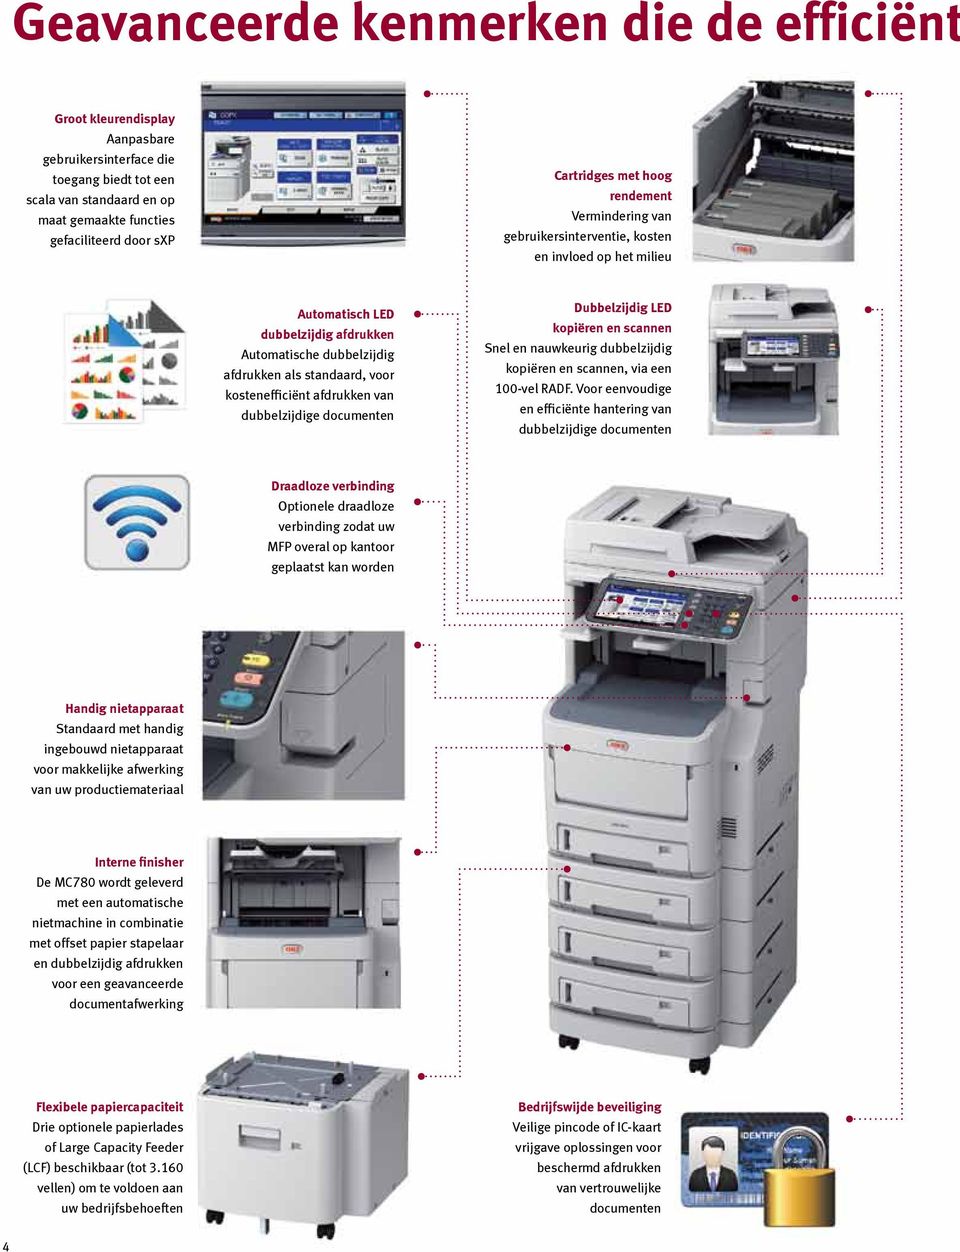 kostenefficiënt afdrukken van dubbelzijdige documenten Dubbelzijdig LED kopiëren en scannen Snel en nauwkeurig dubbelzijdig kopiëren en scannen, via een 100-vel RADF.